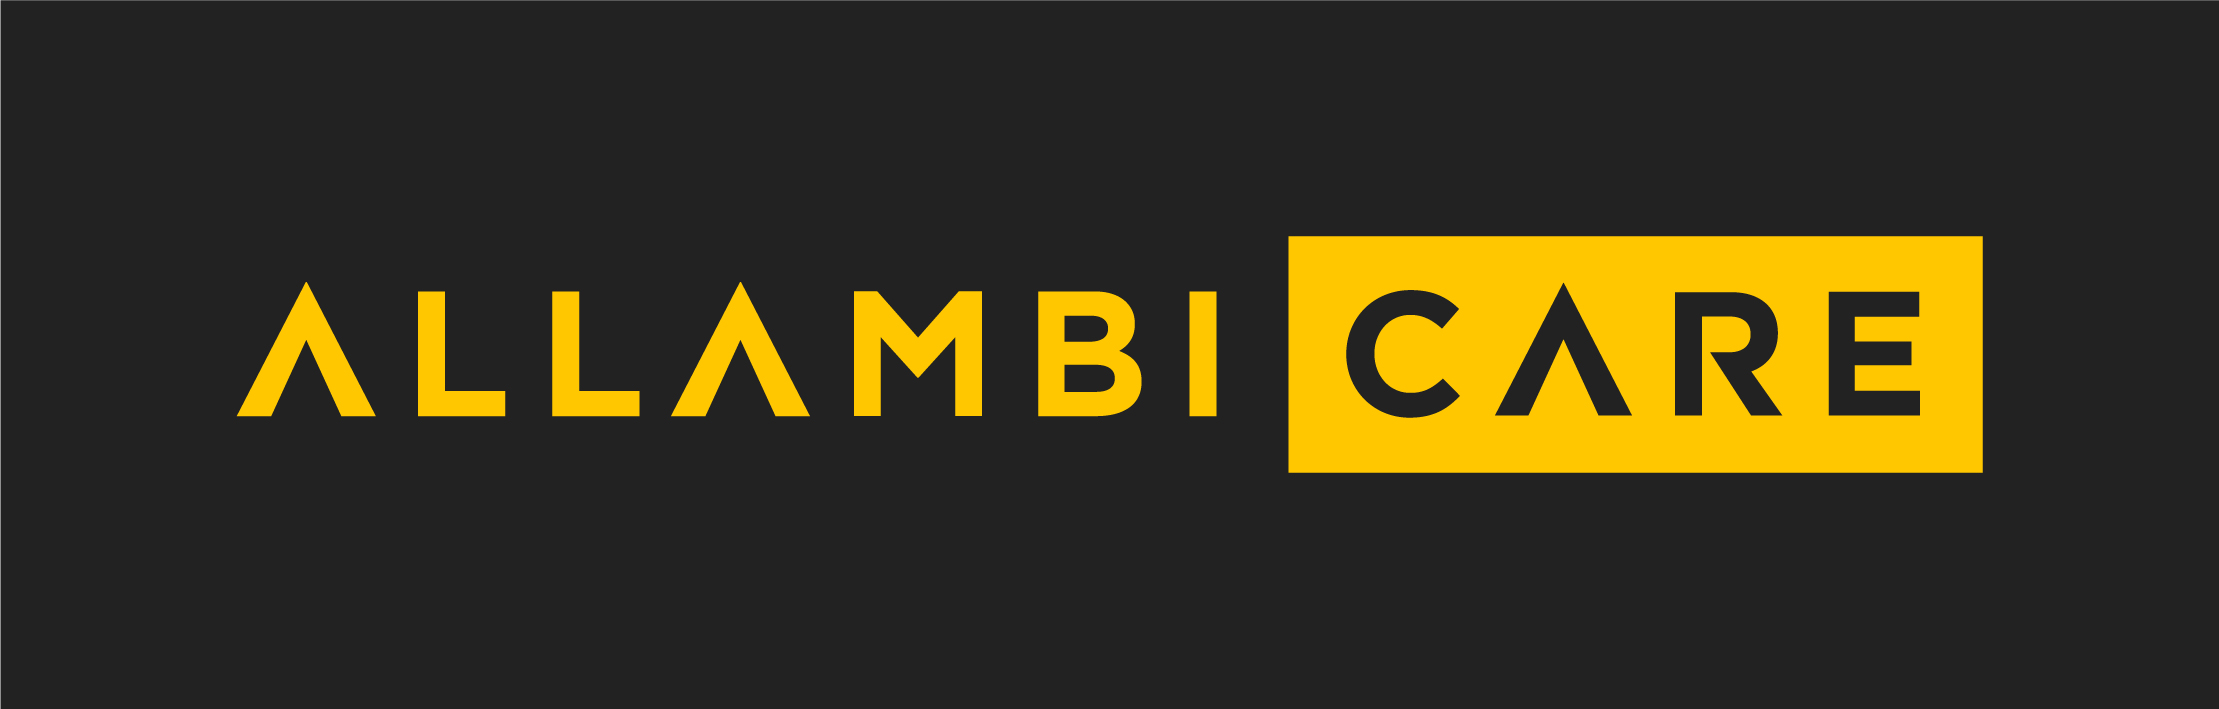 Allambi Care Logo